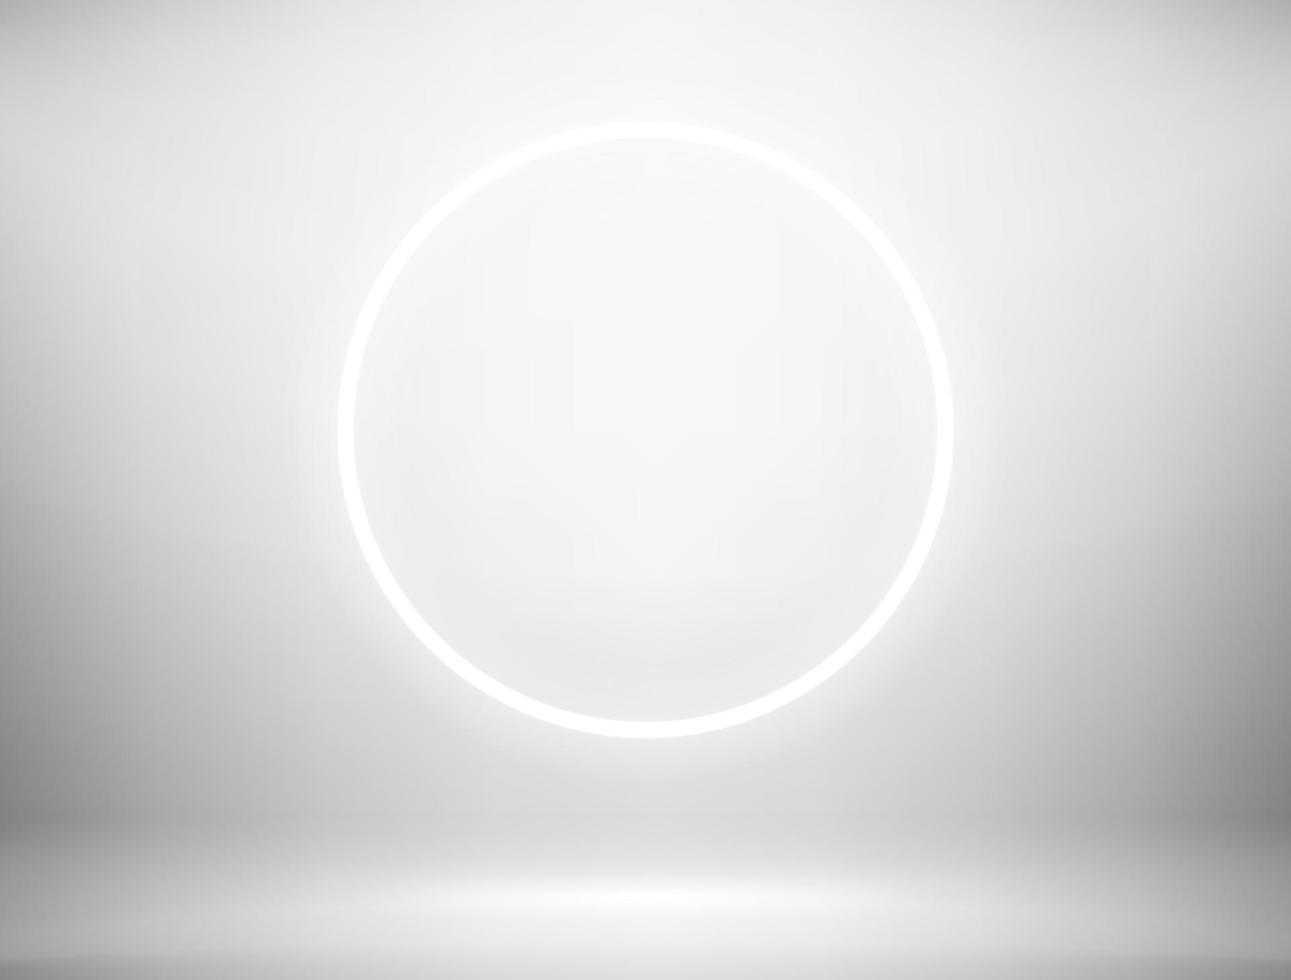 ampoule d'éclairage radial dans un intérieur lumineux. illustration vectorielle de style 3d réaliste vecteur